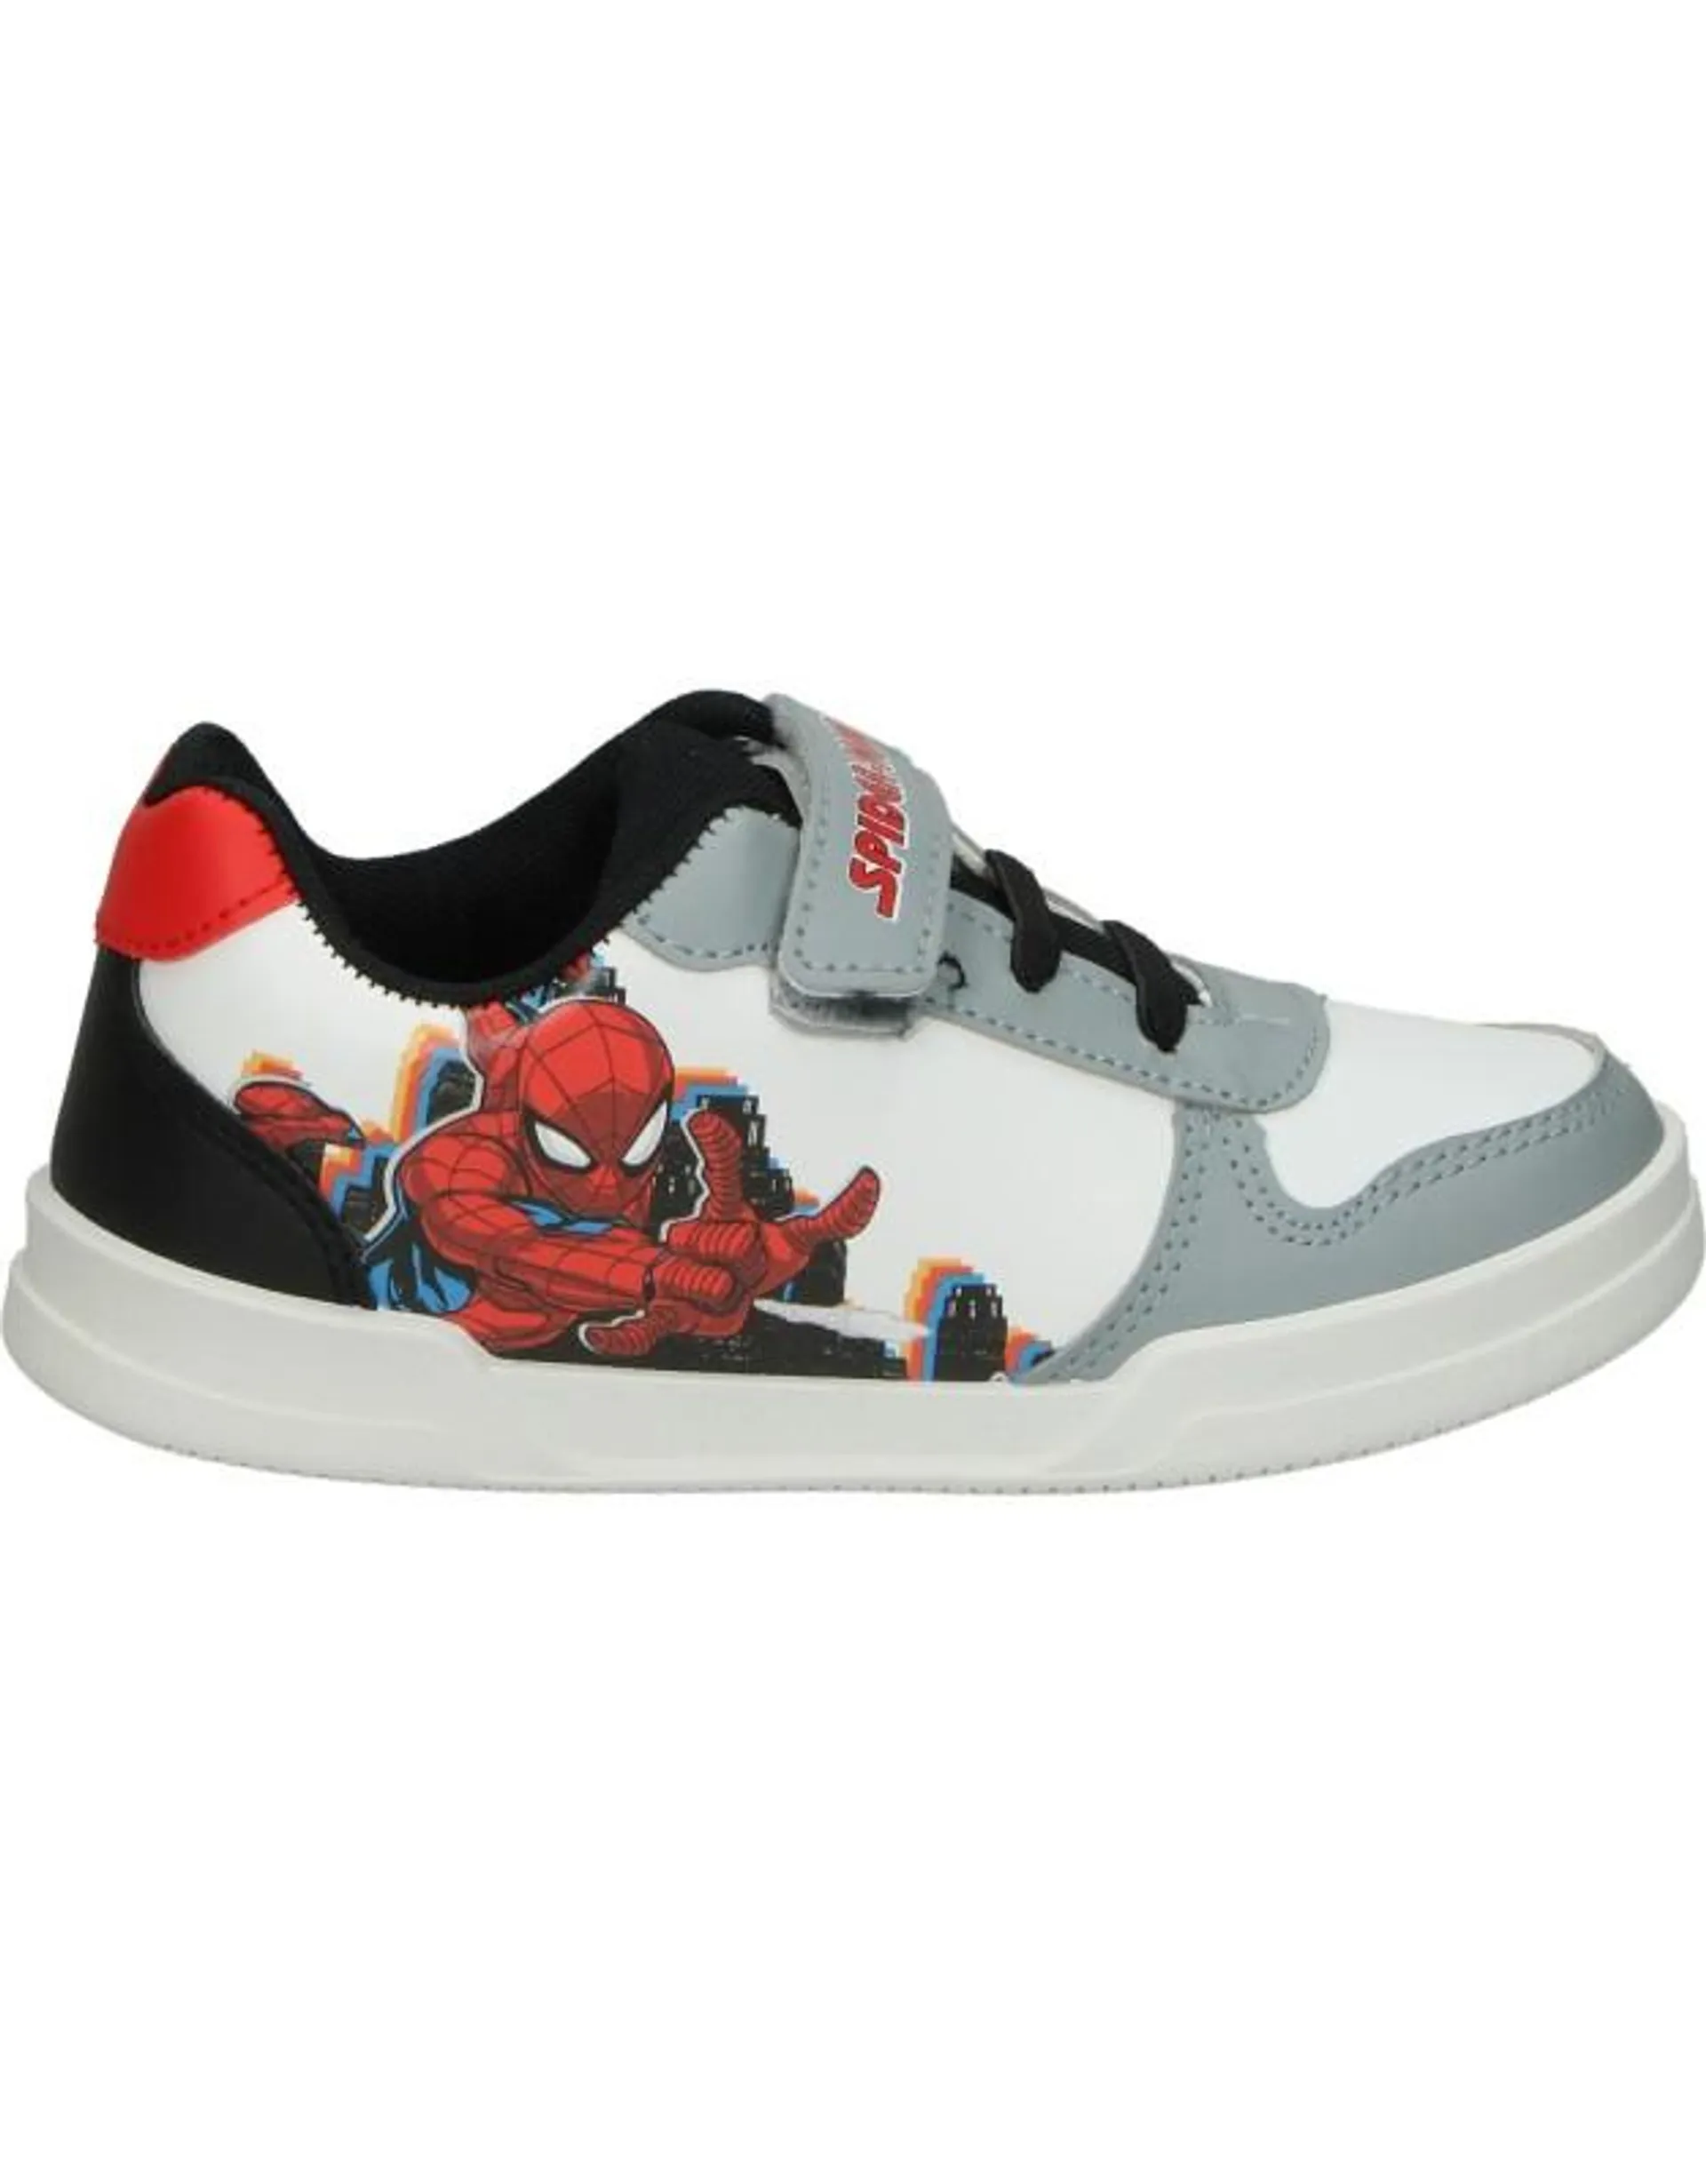 Zapatillas infantiles Spiderman de Leomil